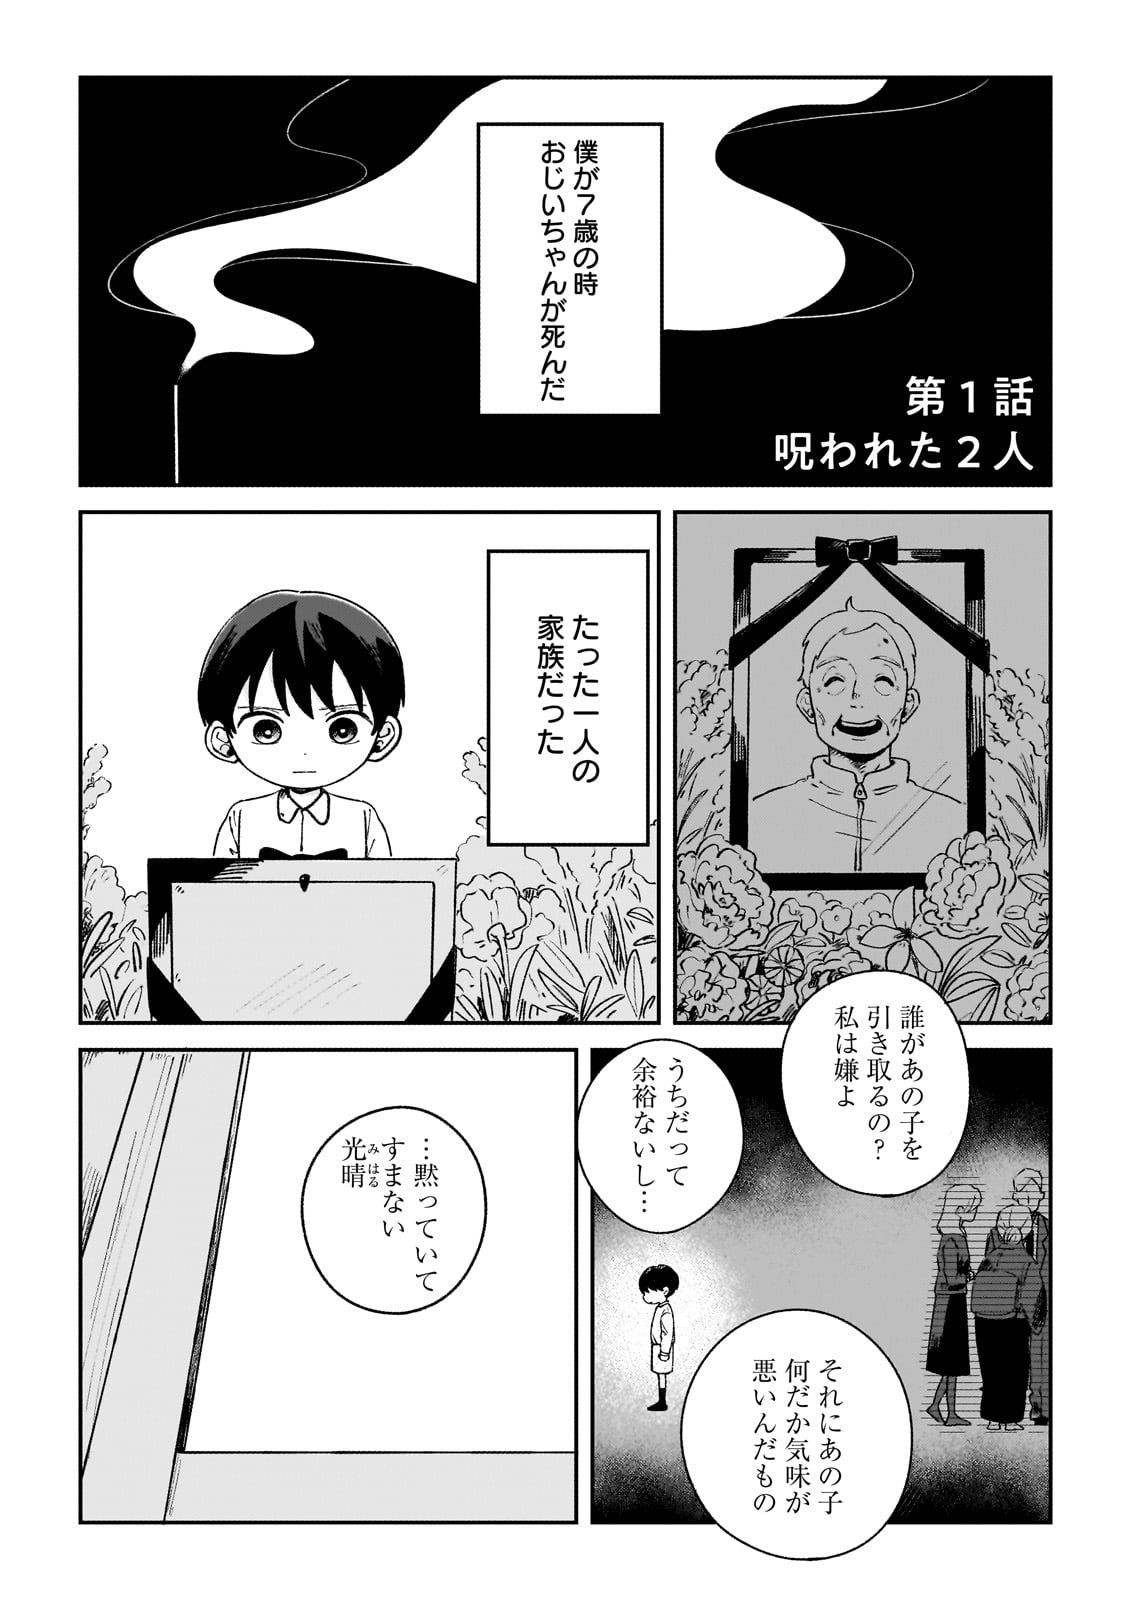 Boku to Ayakashi no 365 Nichi - Chapter 1 - Page 1